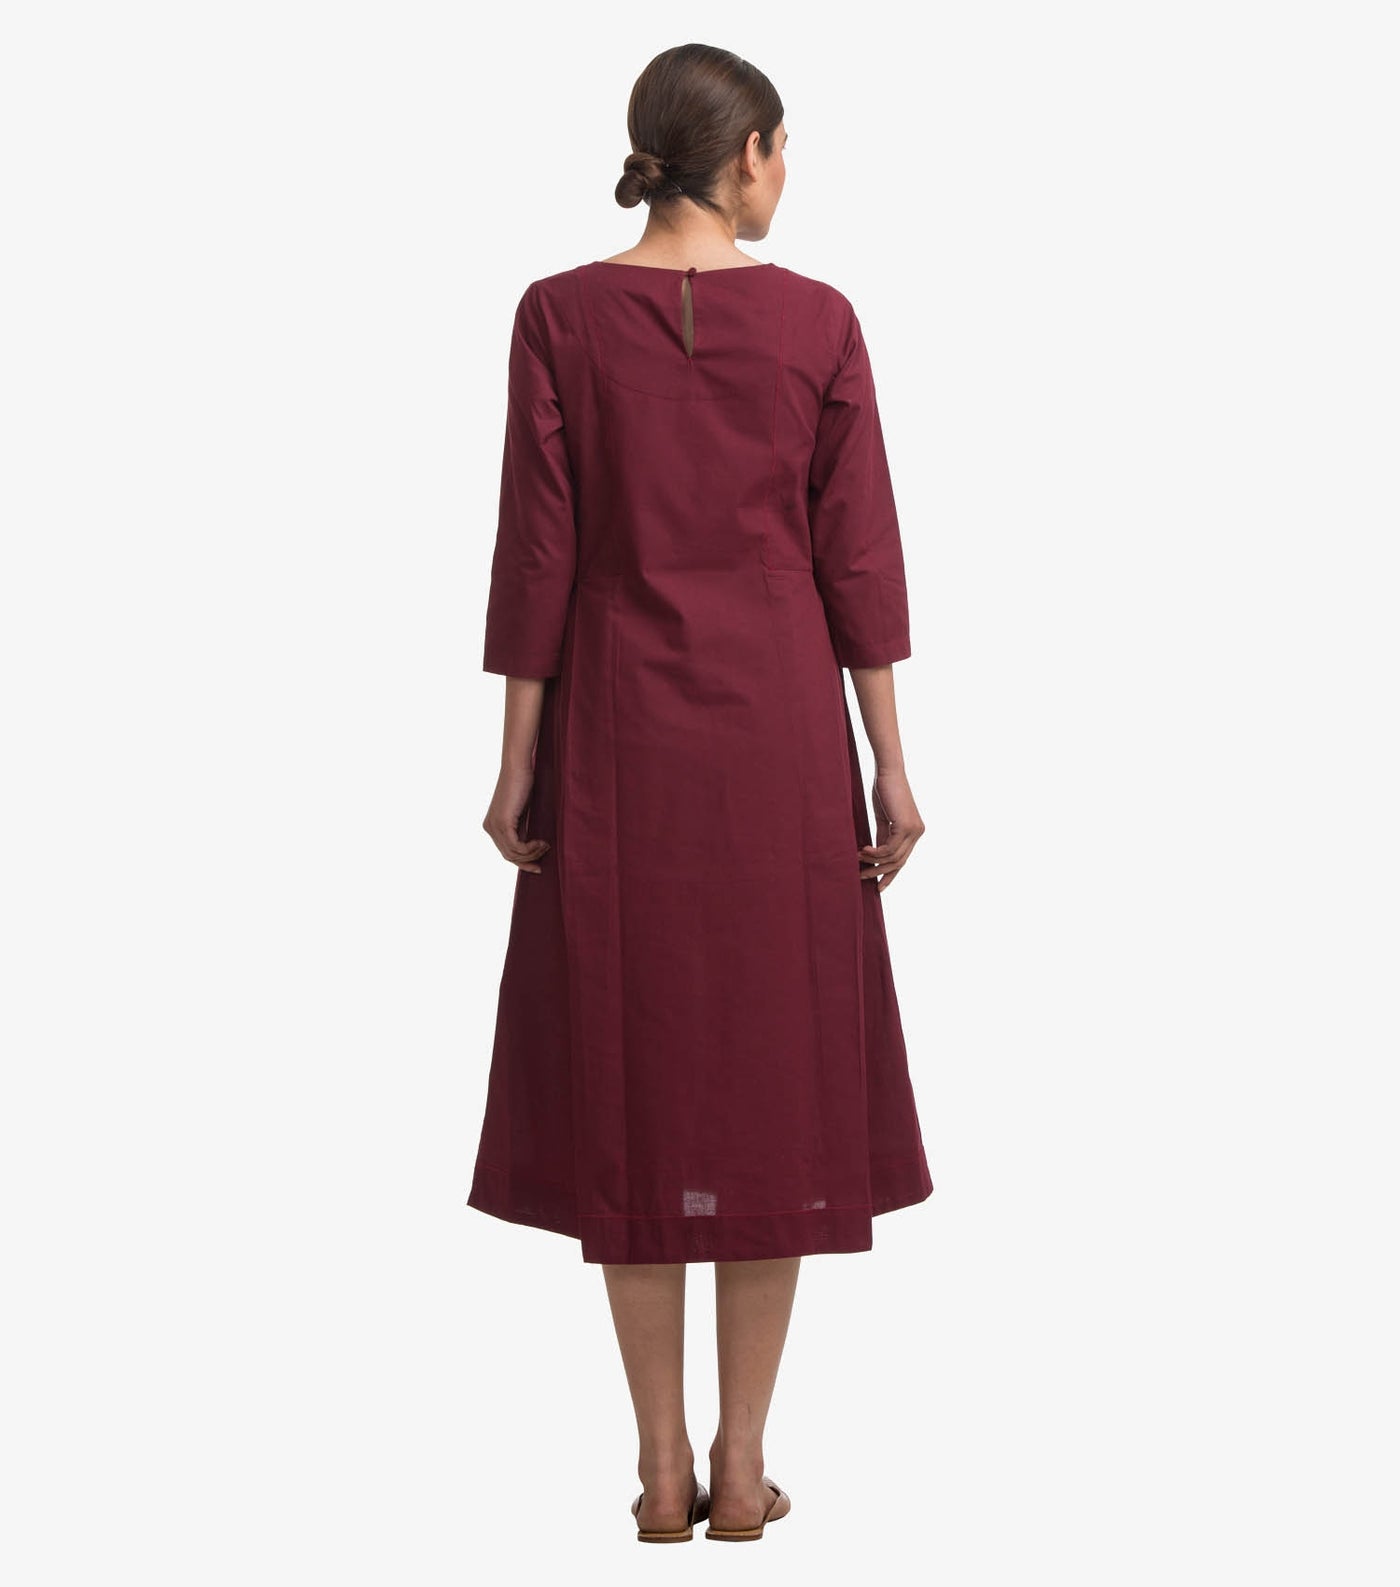 Cranberry solid cotton dress